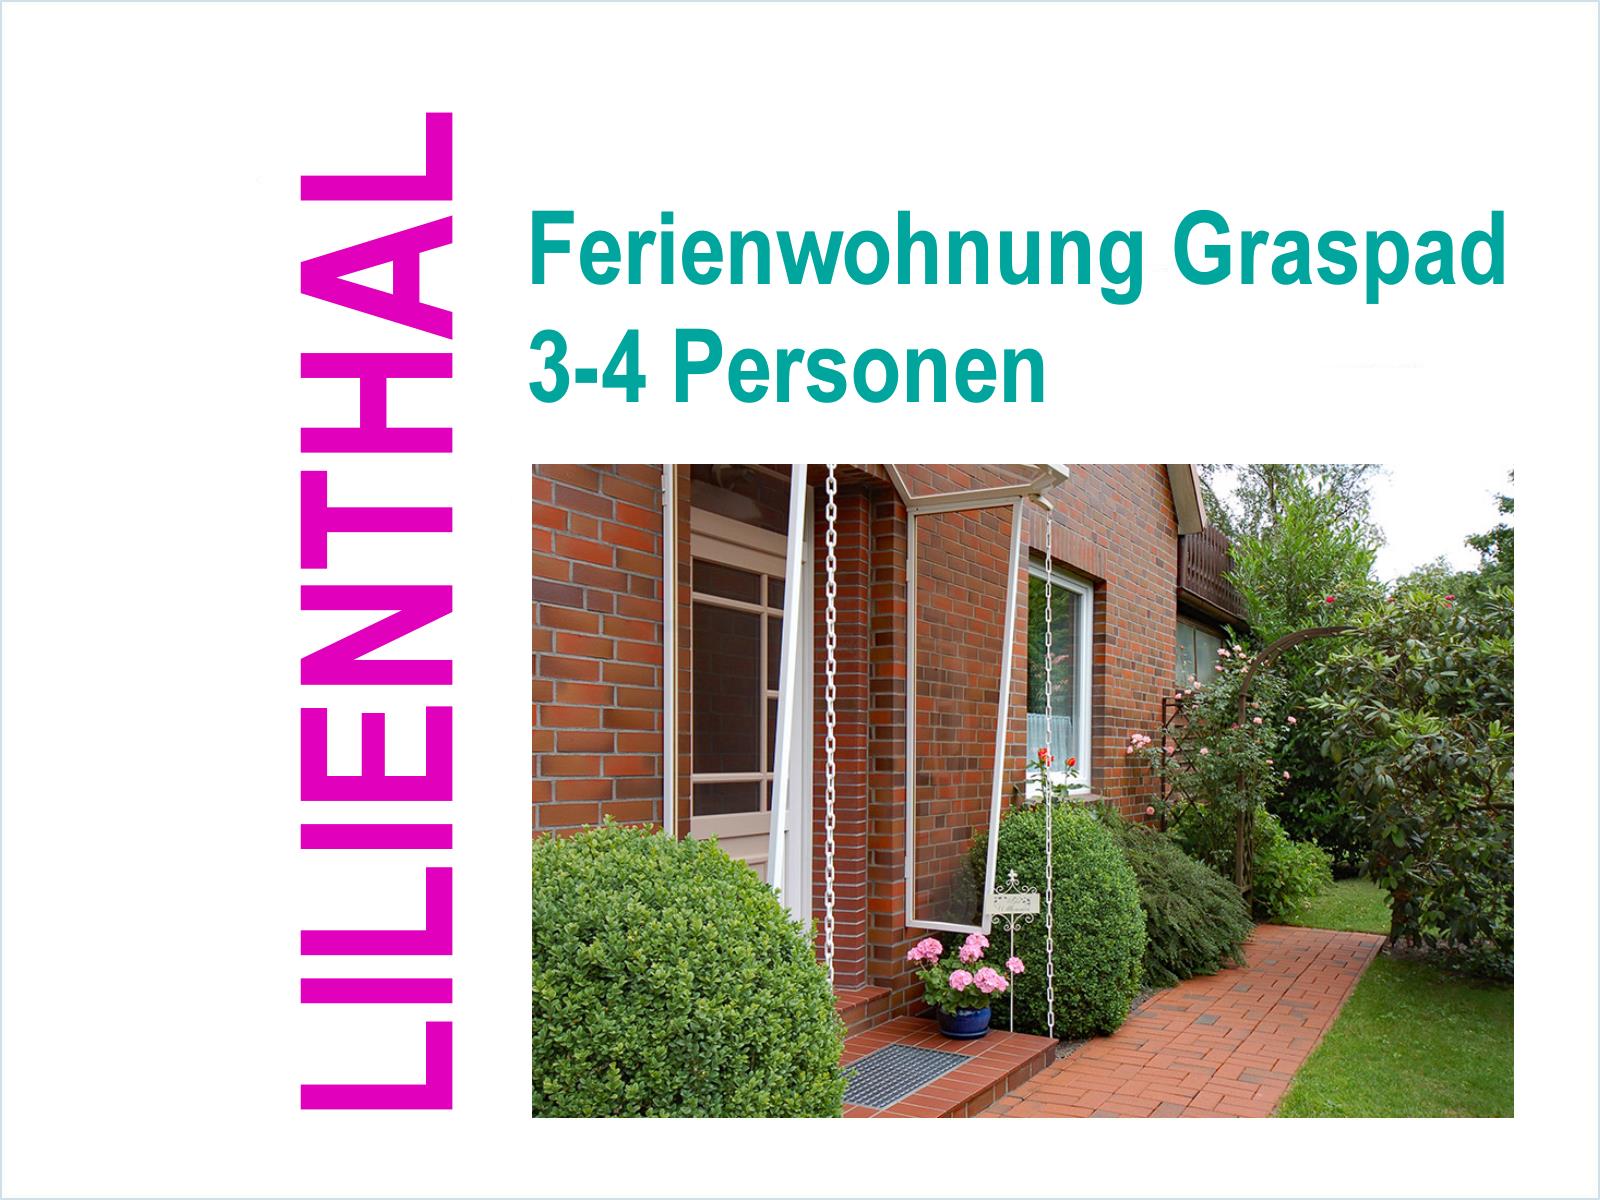 Ferienwohnung Graspad, Lilienthal bei Bremen